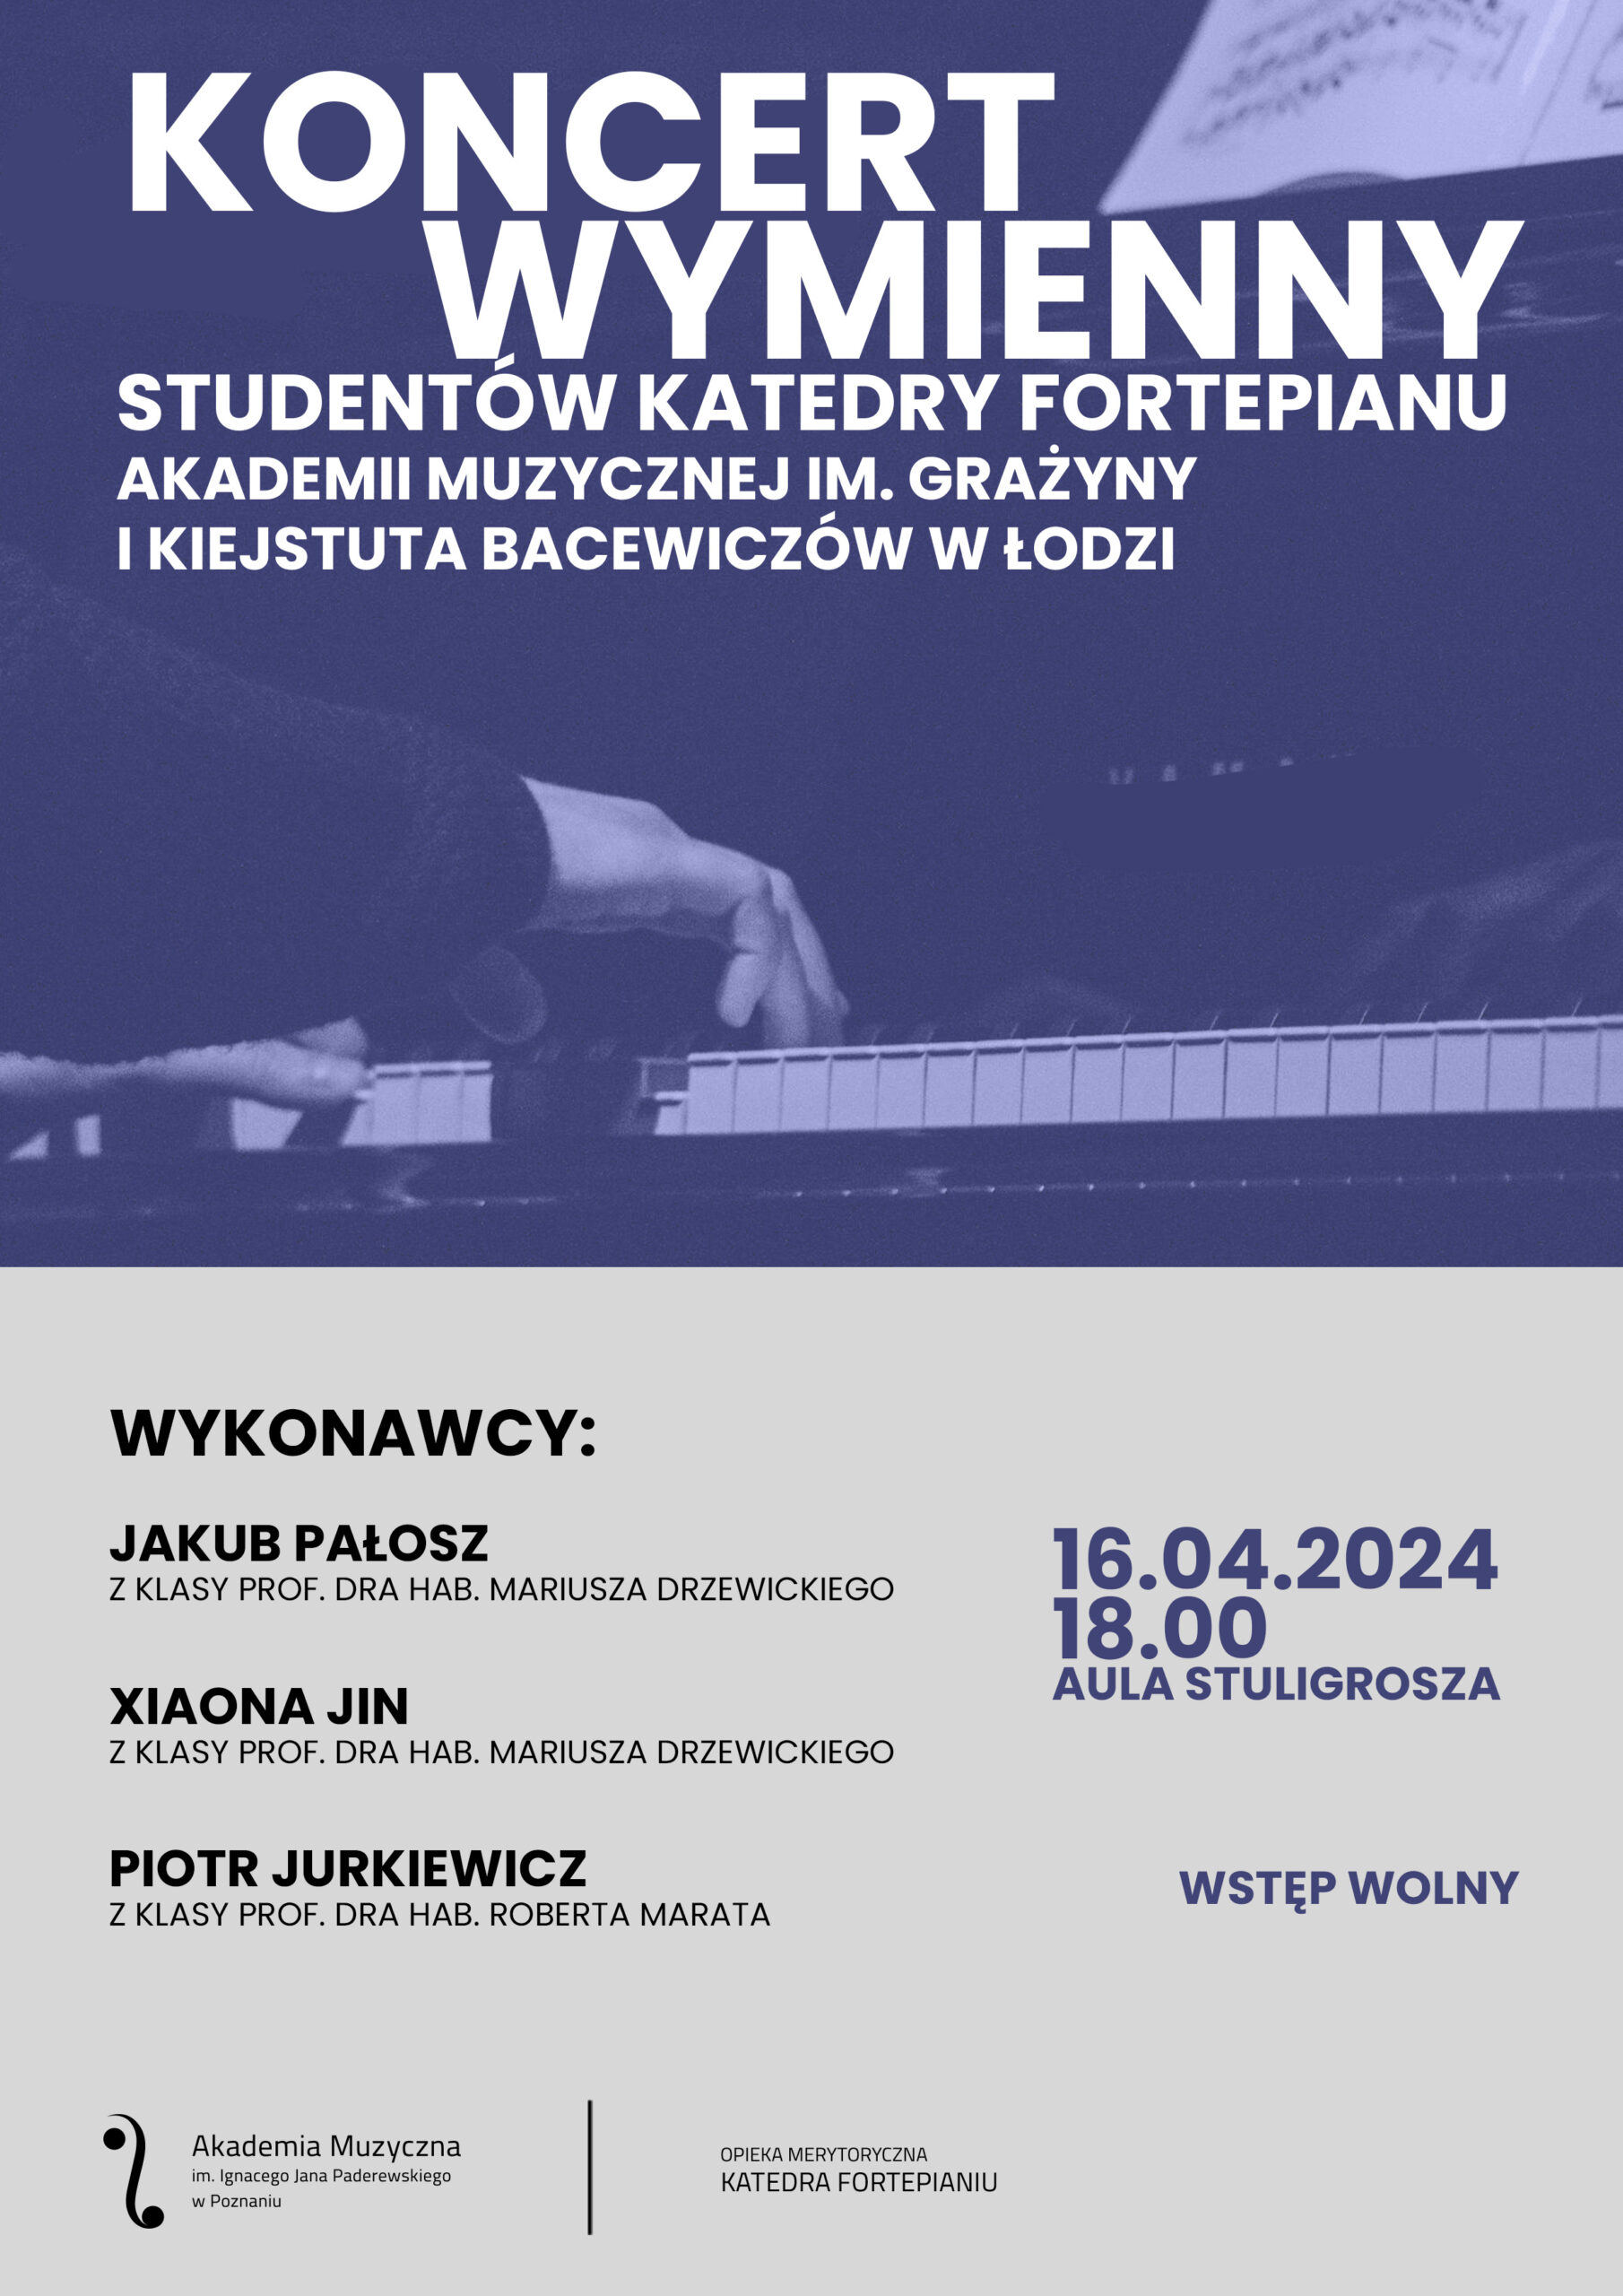 Afisz zawiera informacje na temat koncertu wymiennego studentów Akademii z Łodzi w dniu 16 kwietnia 2024